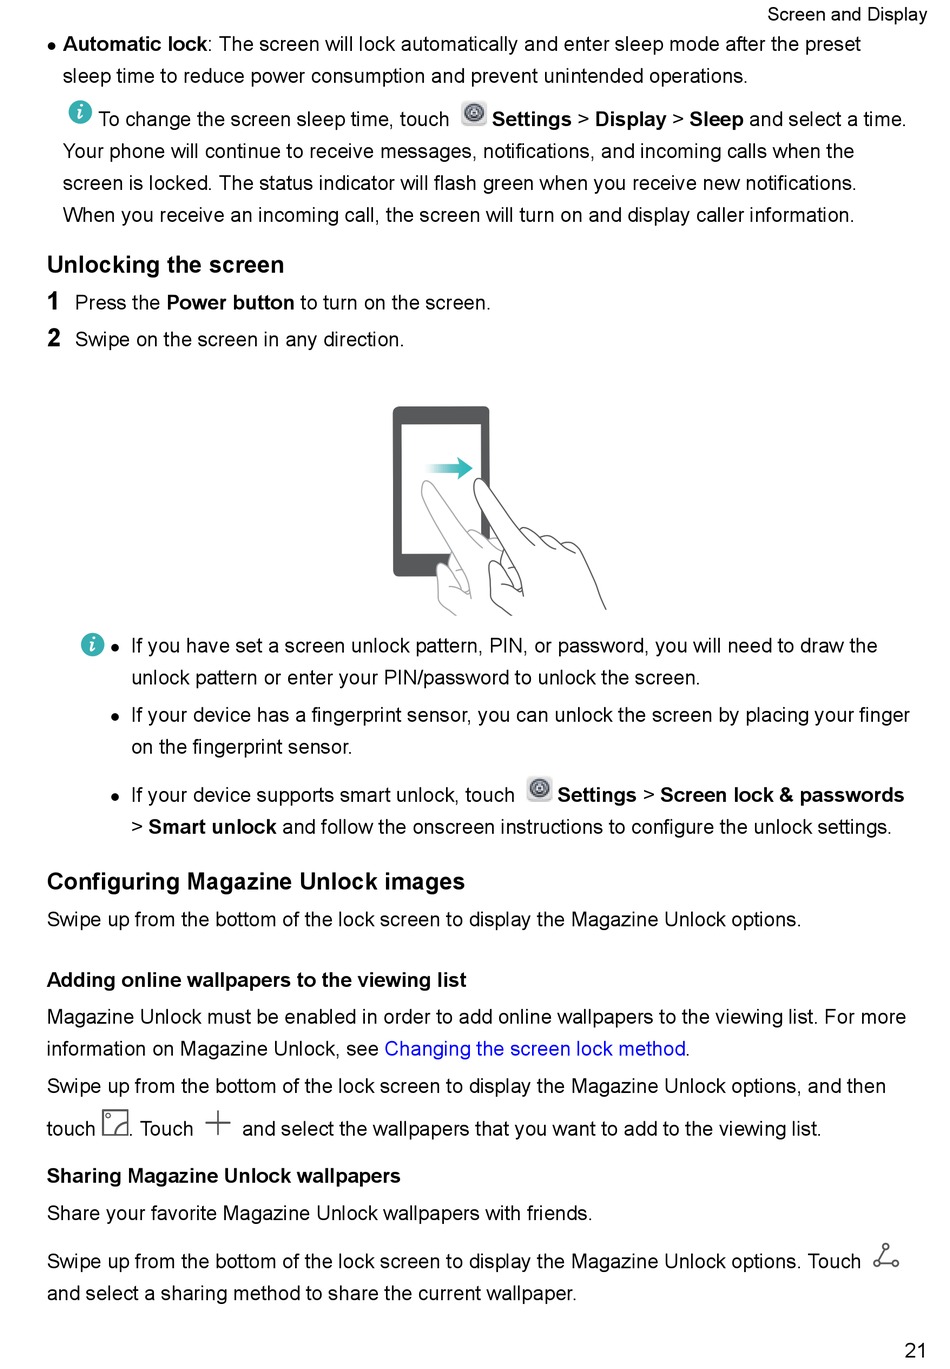 Unlocking The Screen - Huawei P8 Lite User Manual [Page 27] | ManualsLib